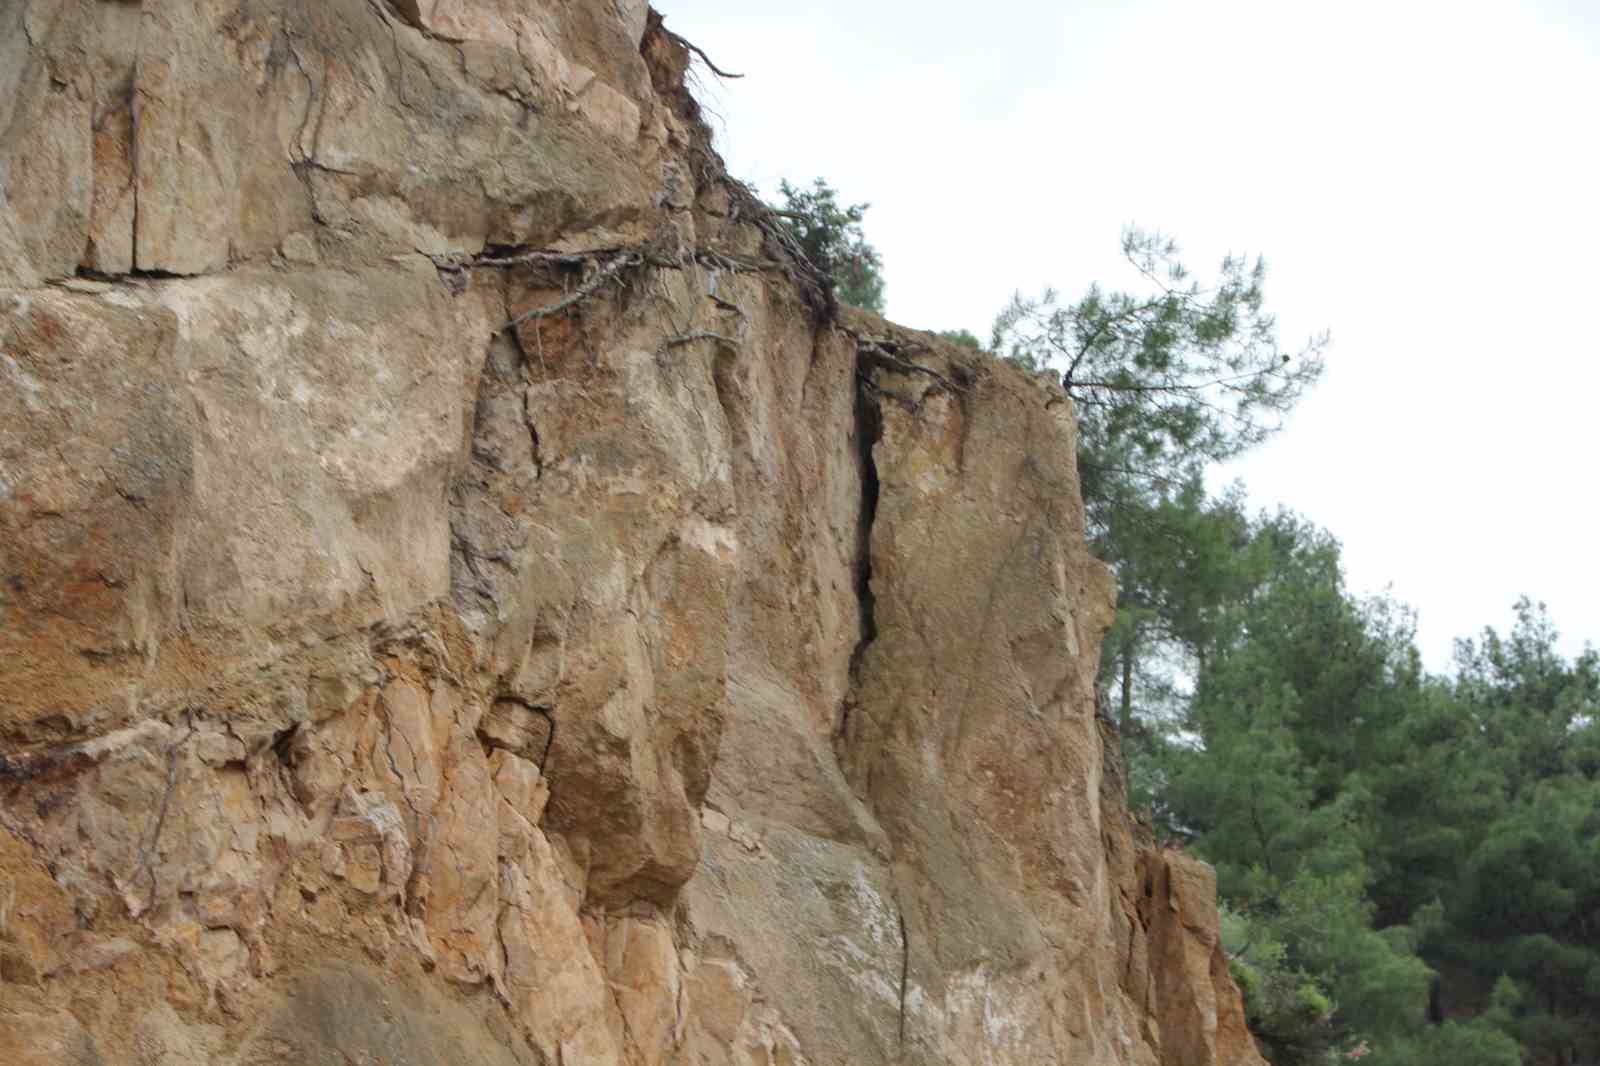 Bilecik-İnhisar karayolunda yarılan kaya parçası tehlike saçıyor